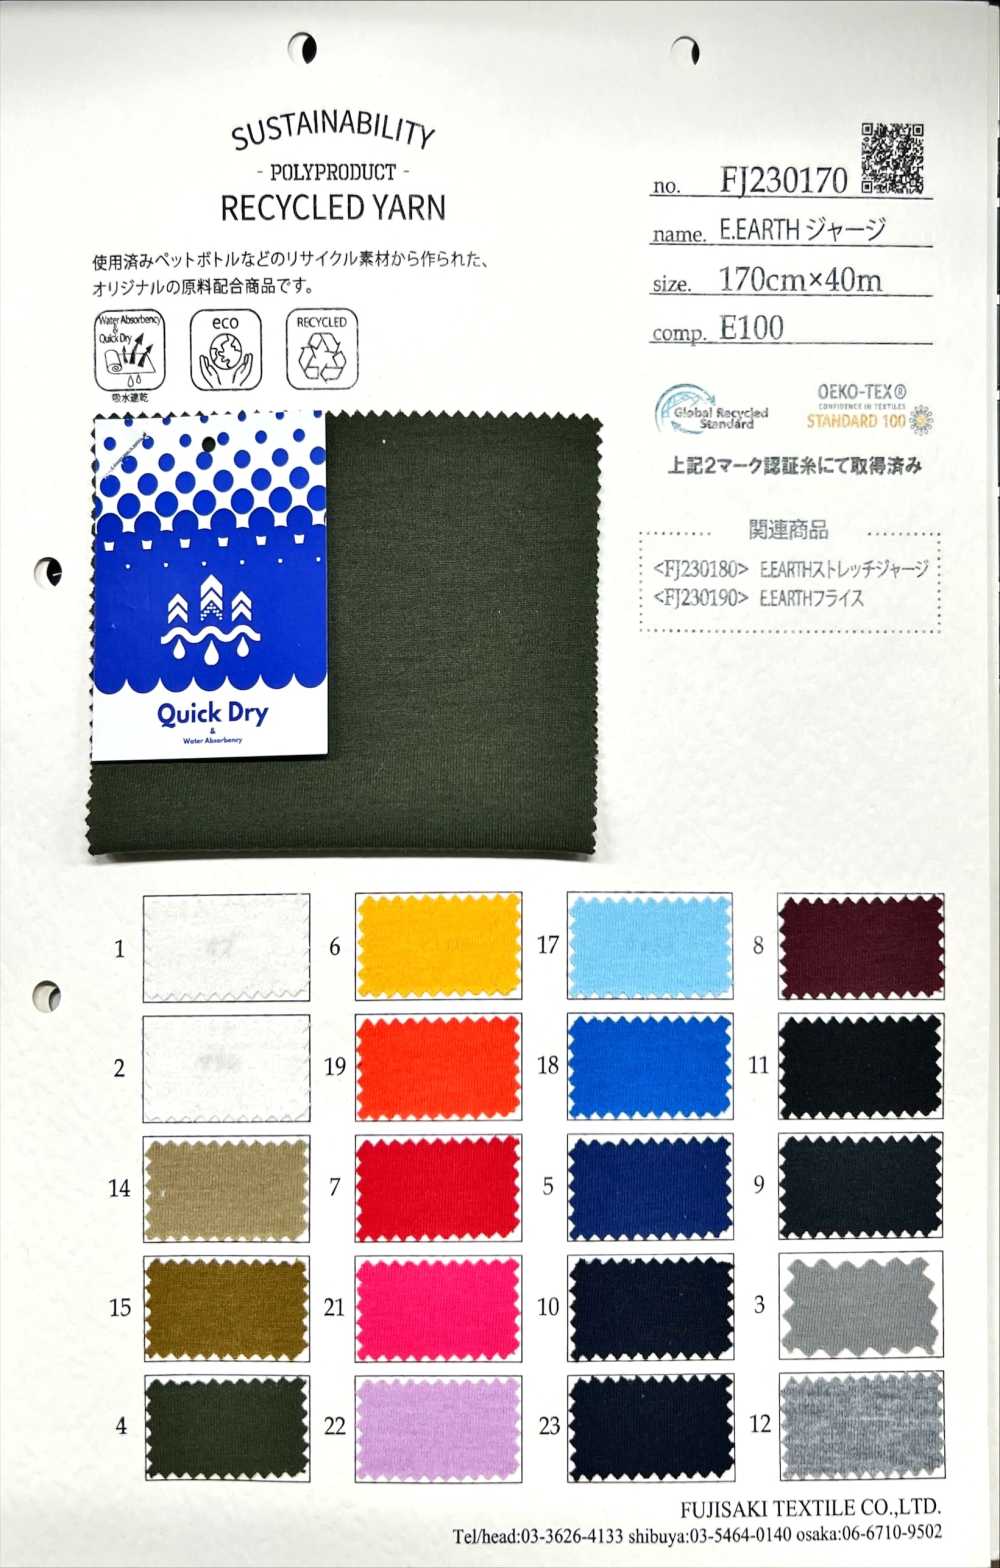 FJ230170 Camisa E.EARTH[Têxtil / Tecido] Fujisaki Textile